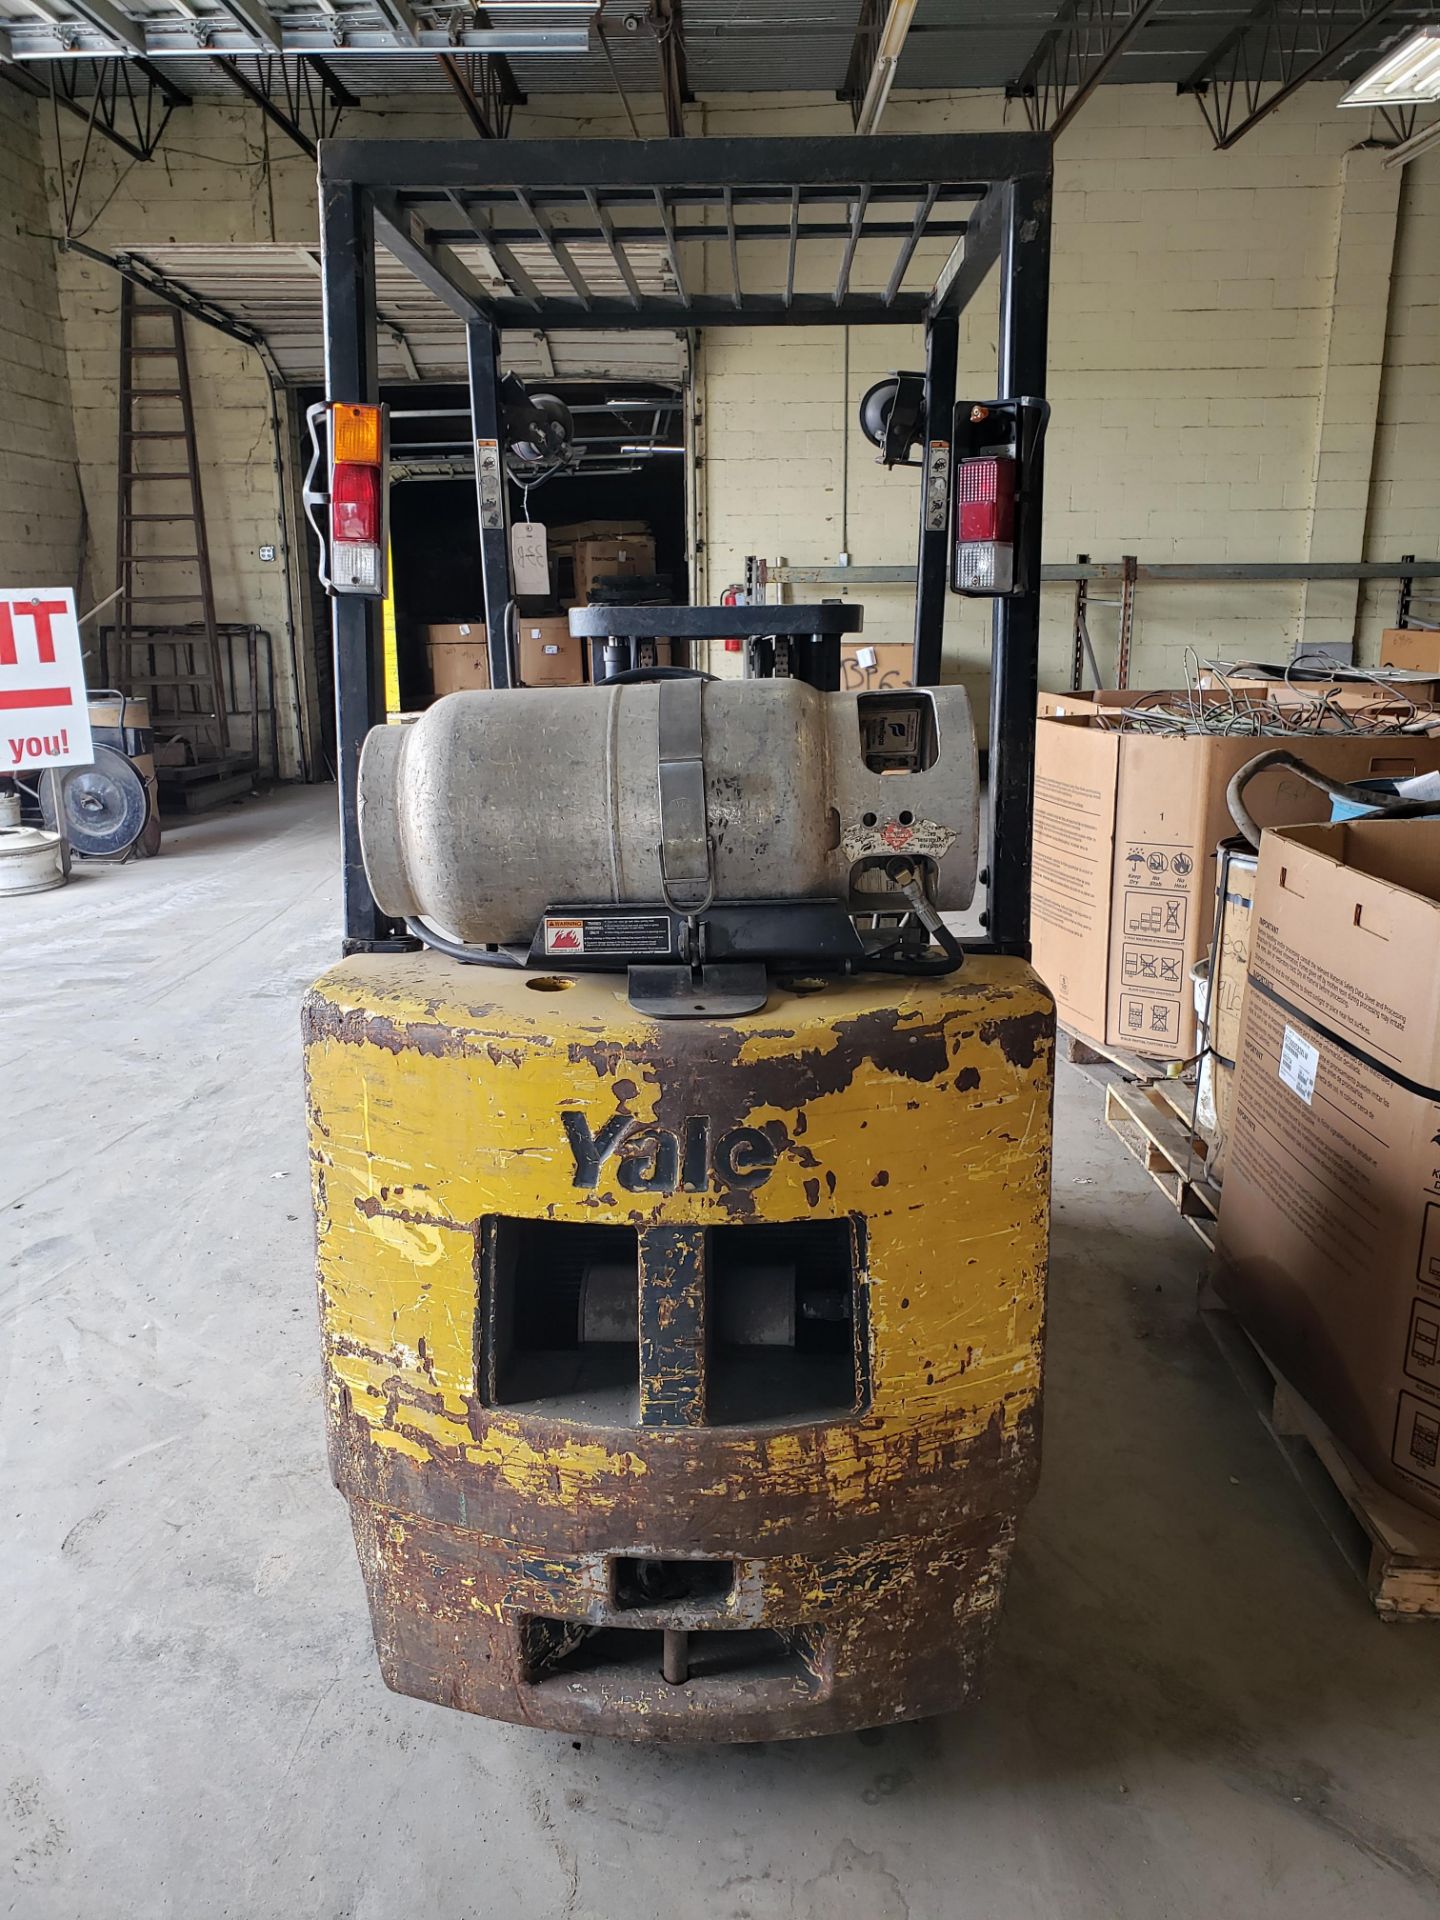 Yale Model E40136 Forklift - Image 5 of 8